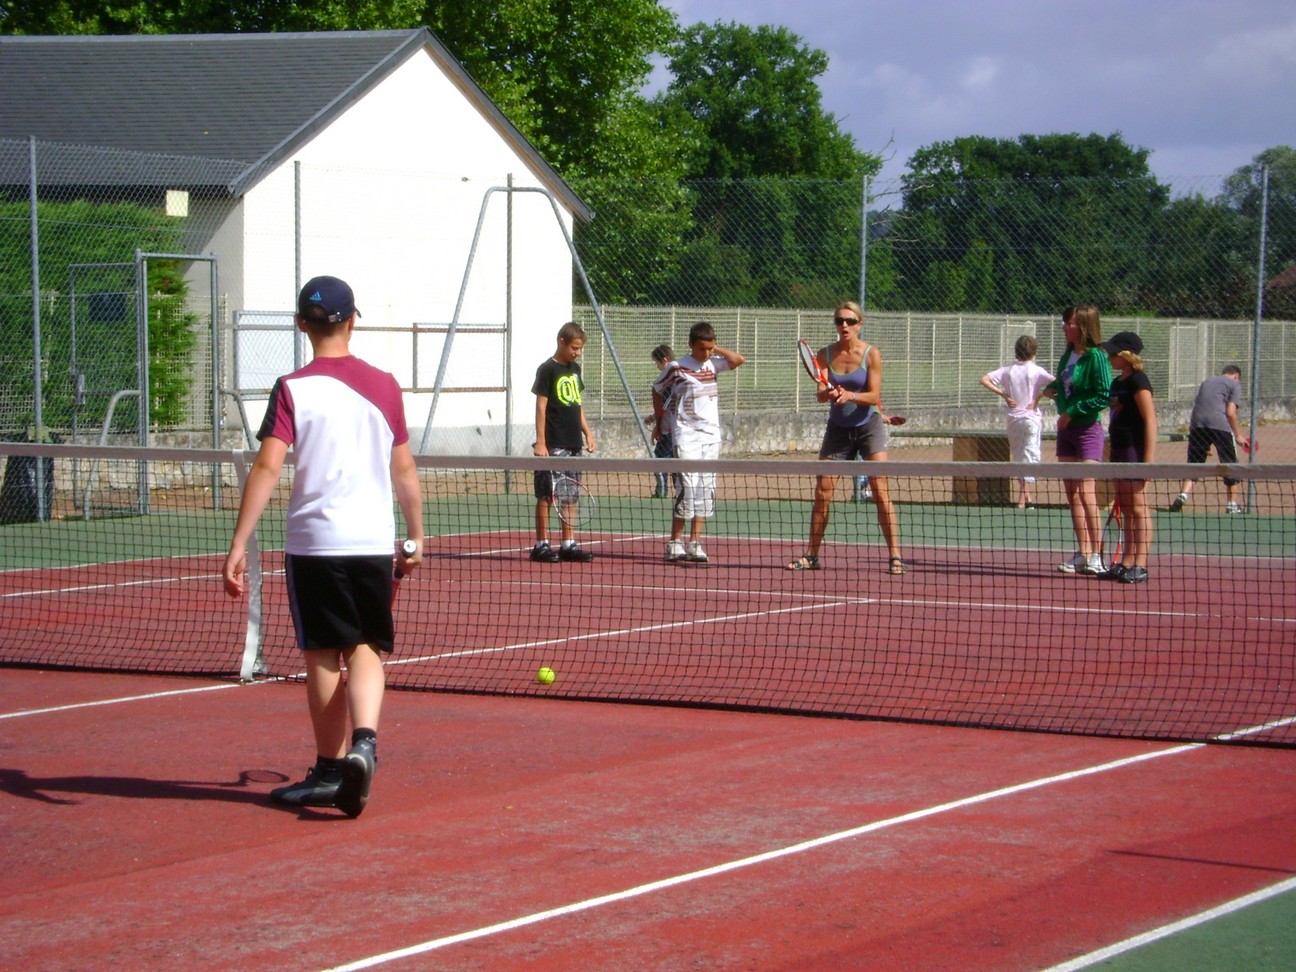 http://2.bp.blogspot.com/_WqtUgHllX10/TD77kpebIhI/AAAAAAAAAGM/B7ettBJzlbI/s1600/tennis.jpg